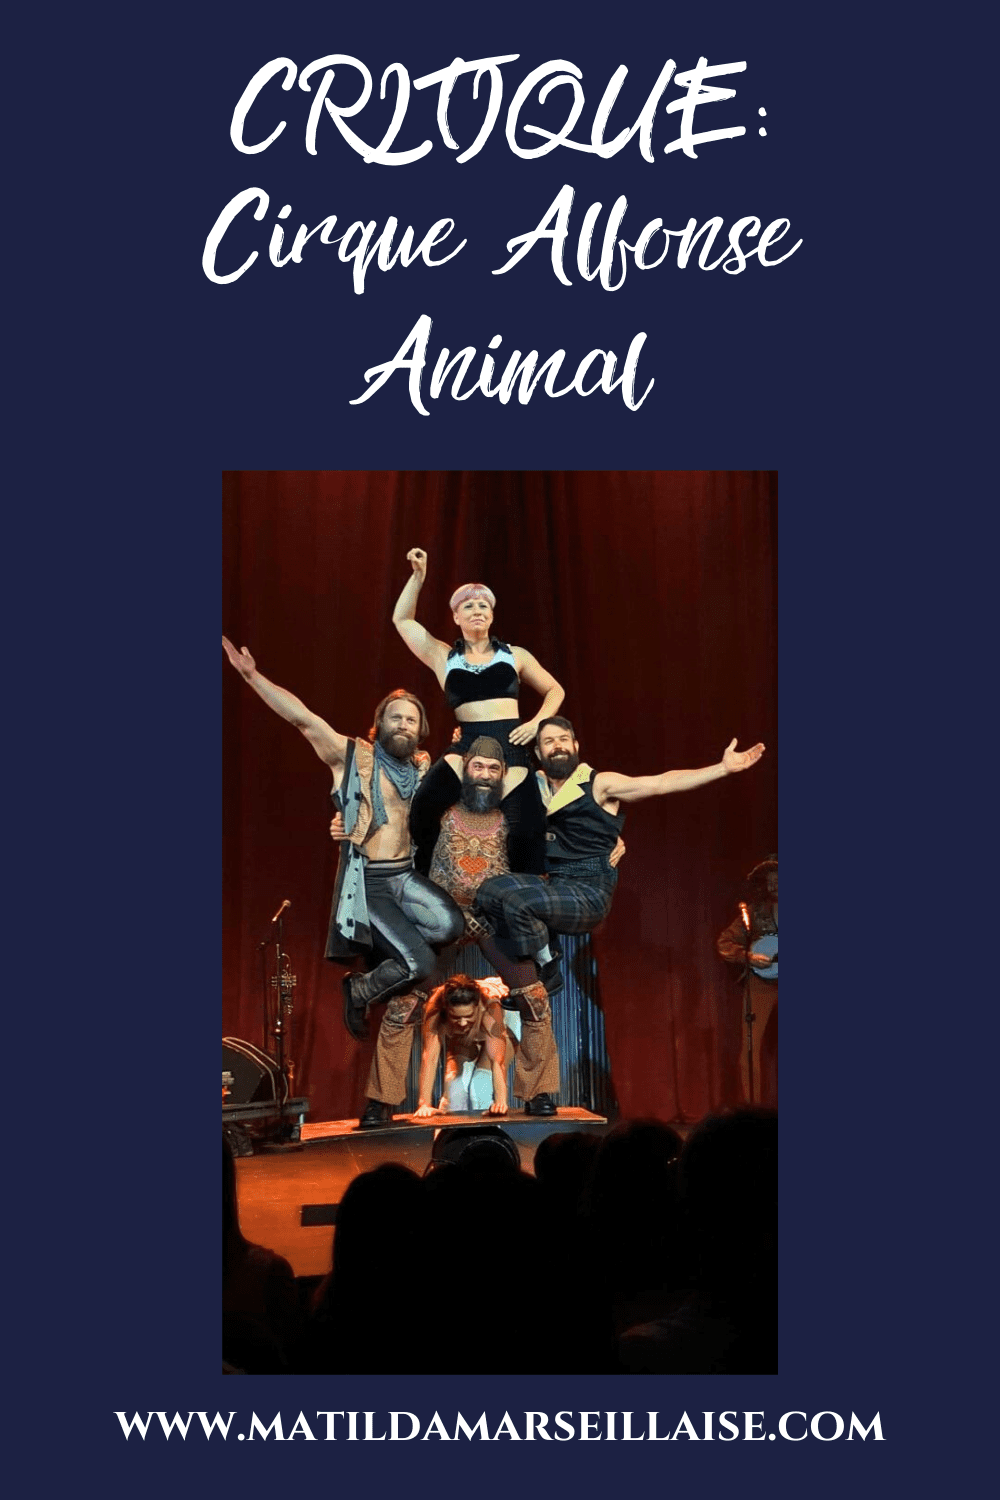 Le nouveau spectacle du Cirque Alfonse, Animal, est un véritable bijou de basse-cour